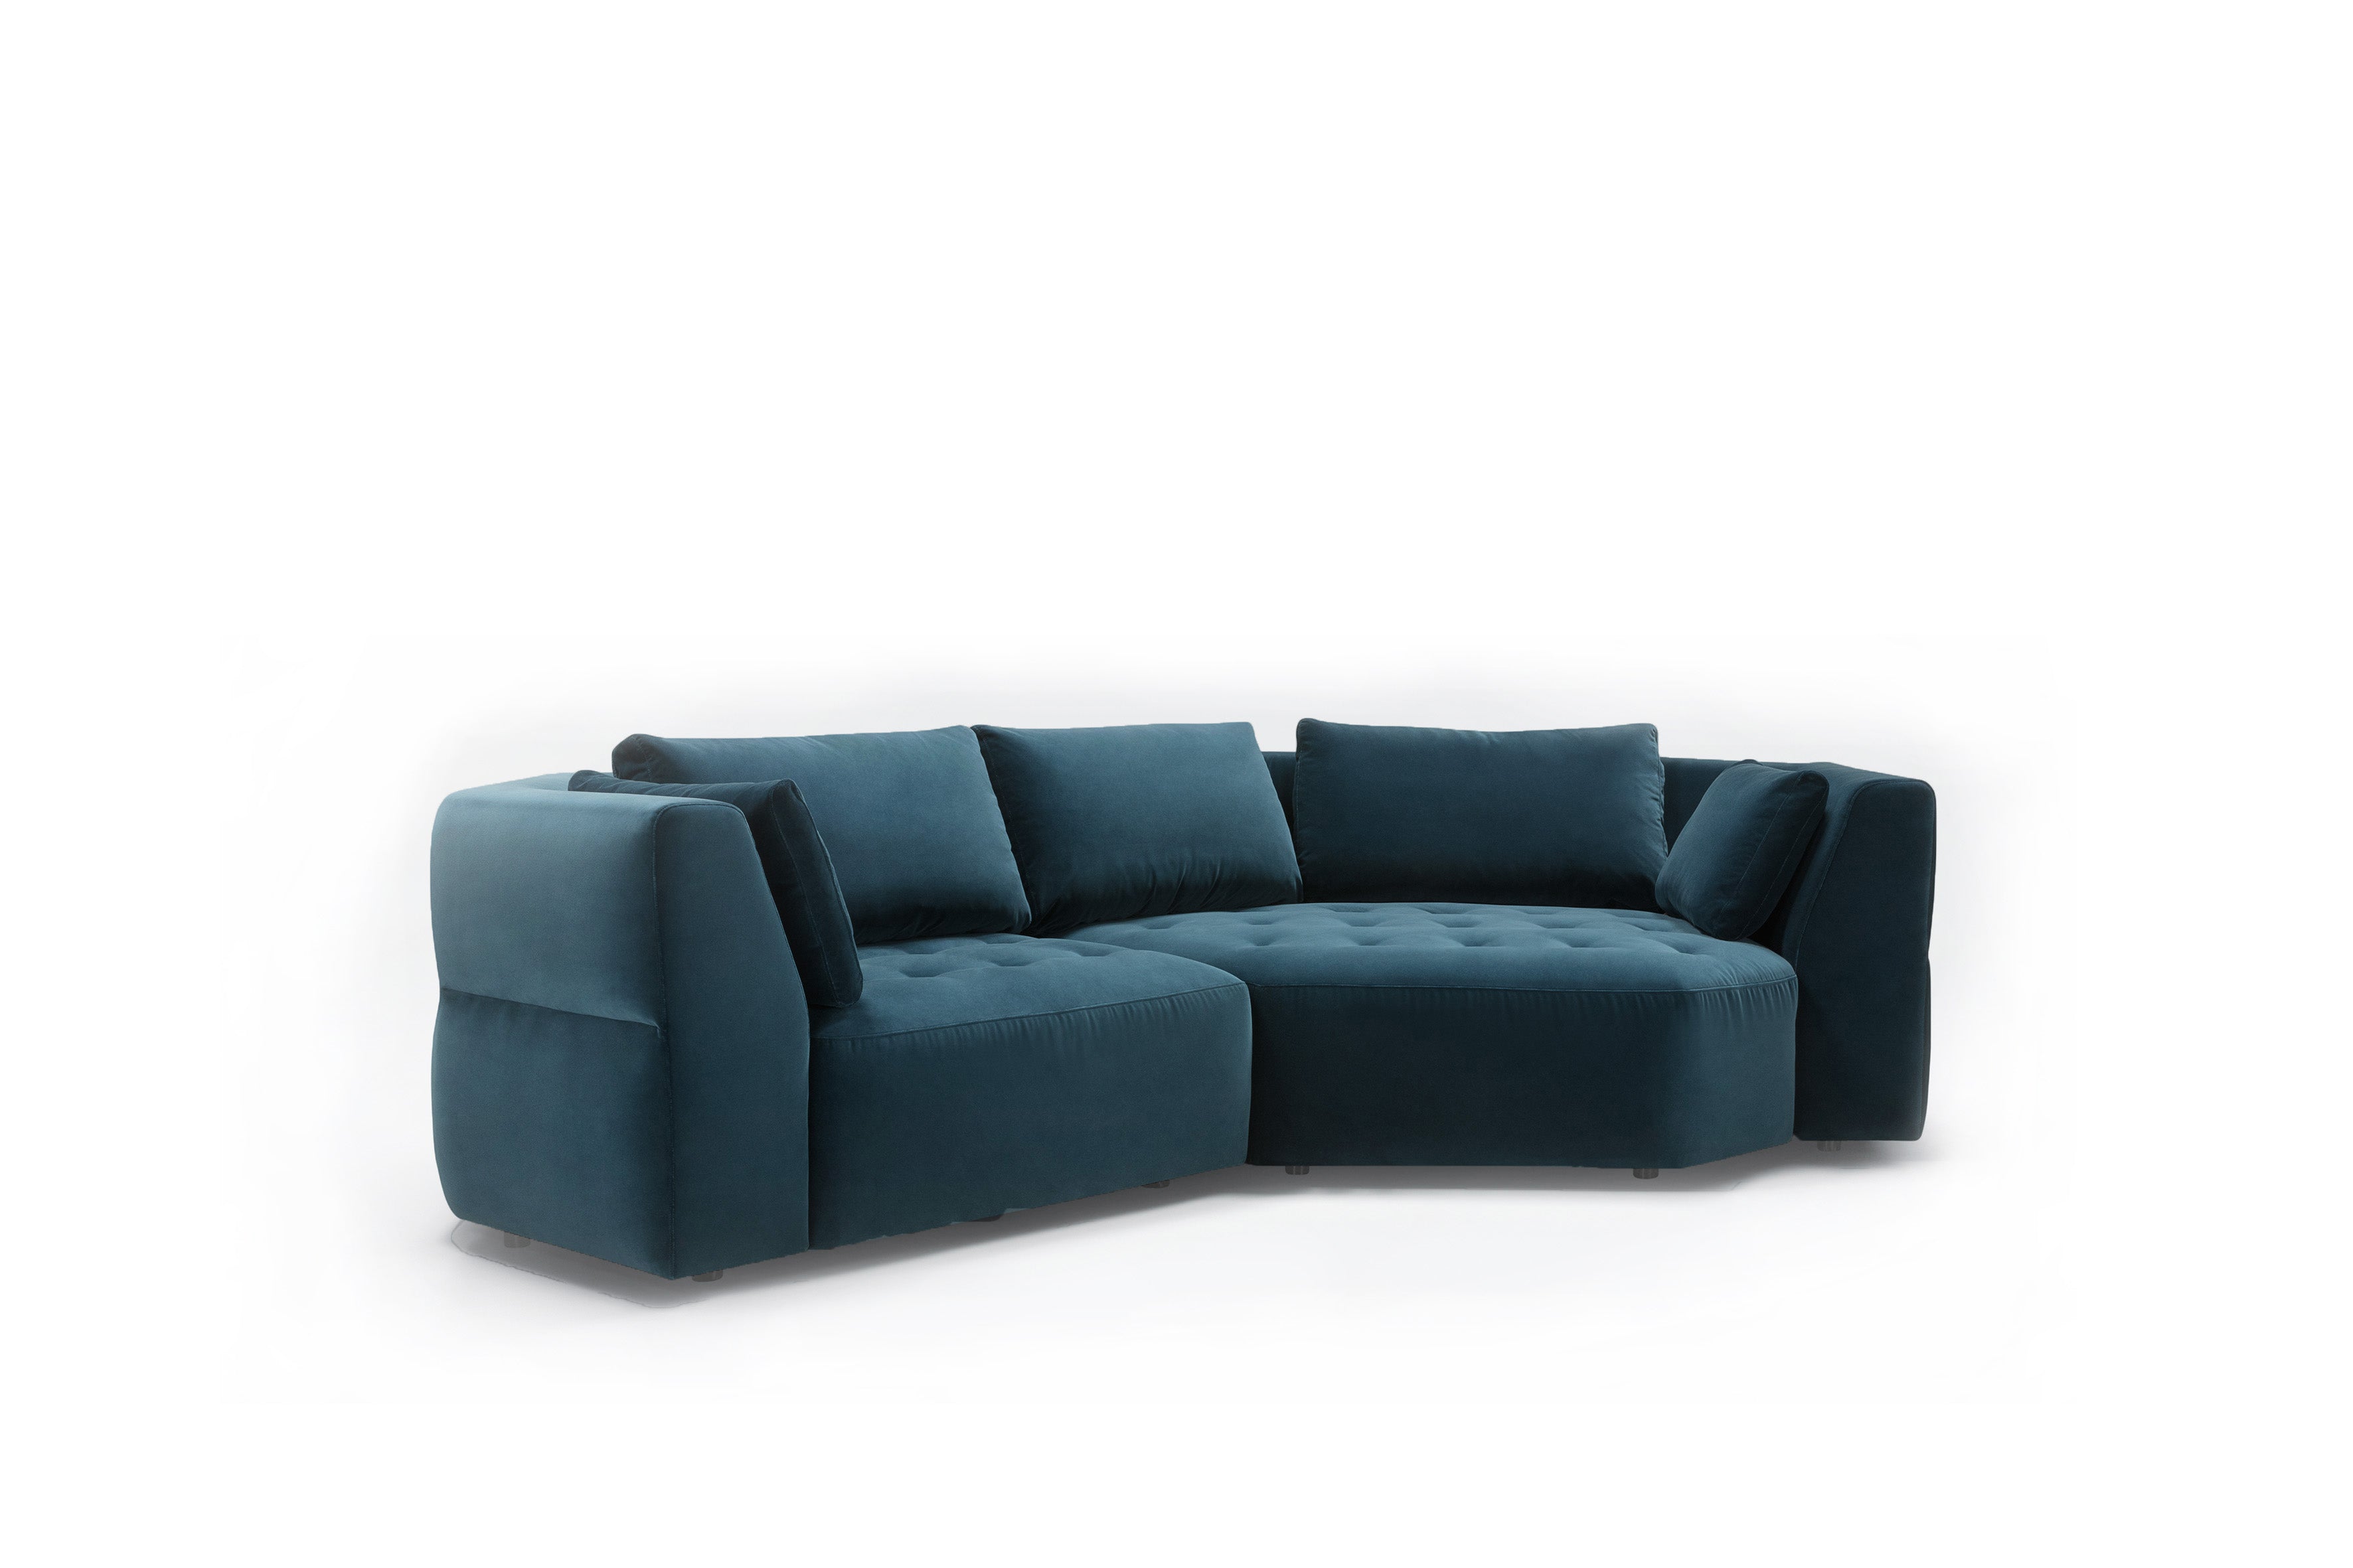 Mastrella Codi Set 1 Corner Sofa Right